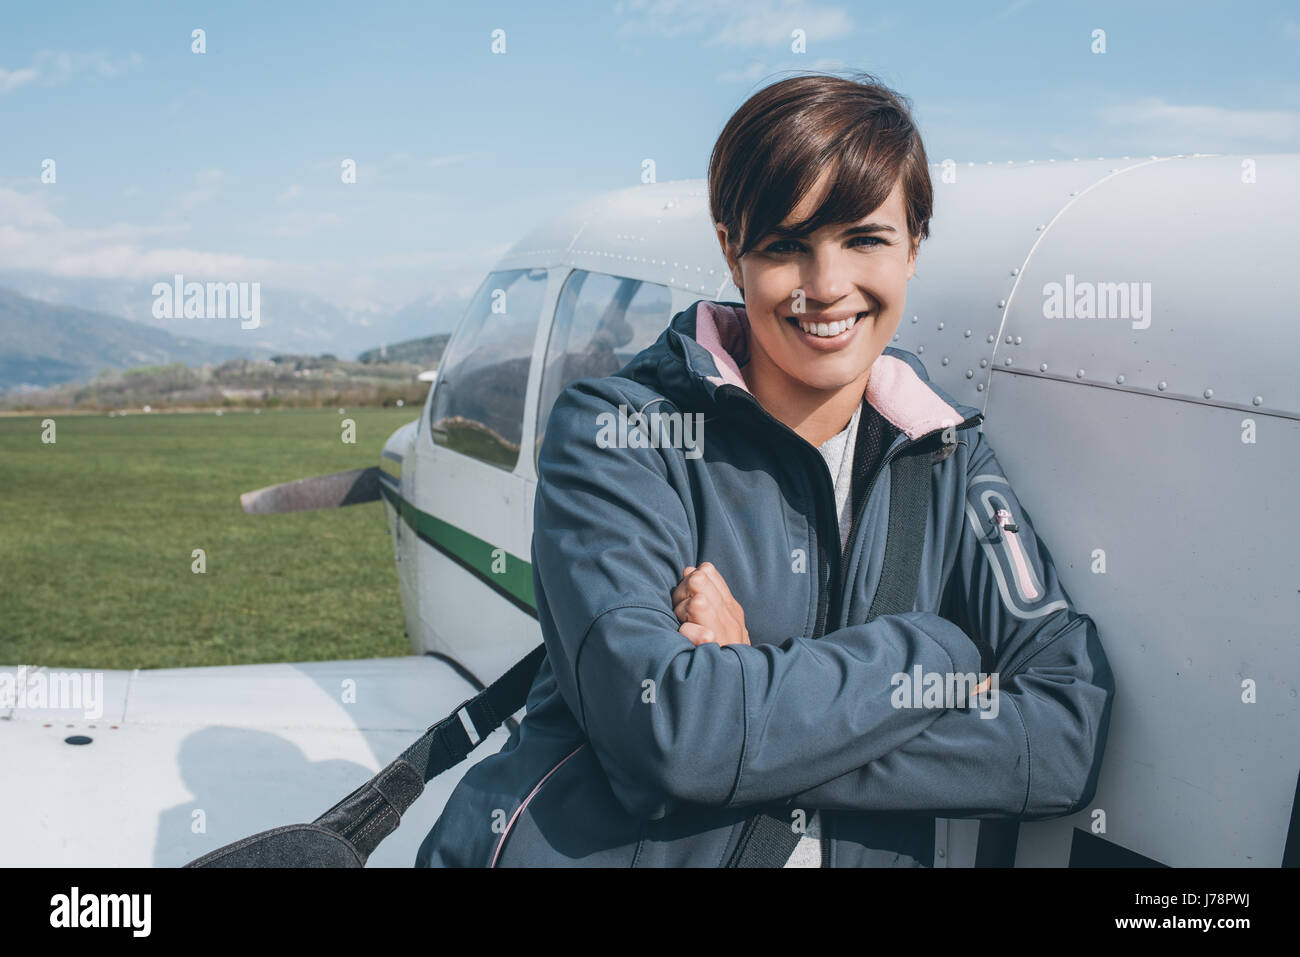 Sonriendo alegre mujer piloto apoyado en un avión de hélice y planteando, cielo azul, en el fondo, los viajes y la aviación CONCEPTO Foto de stock